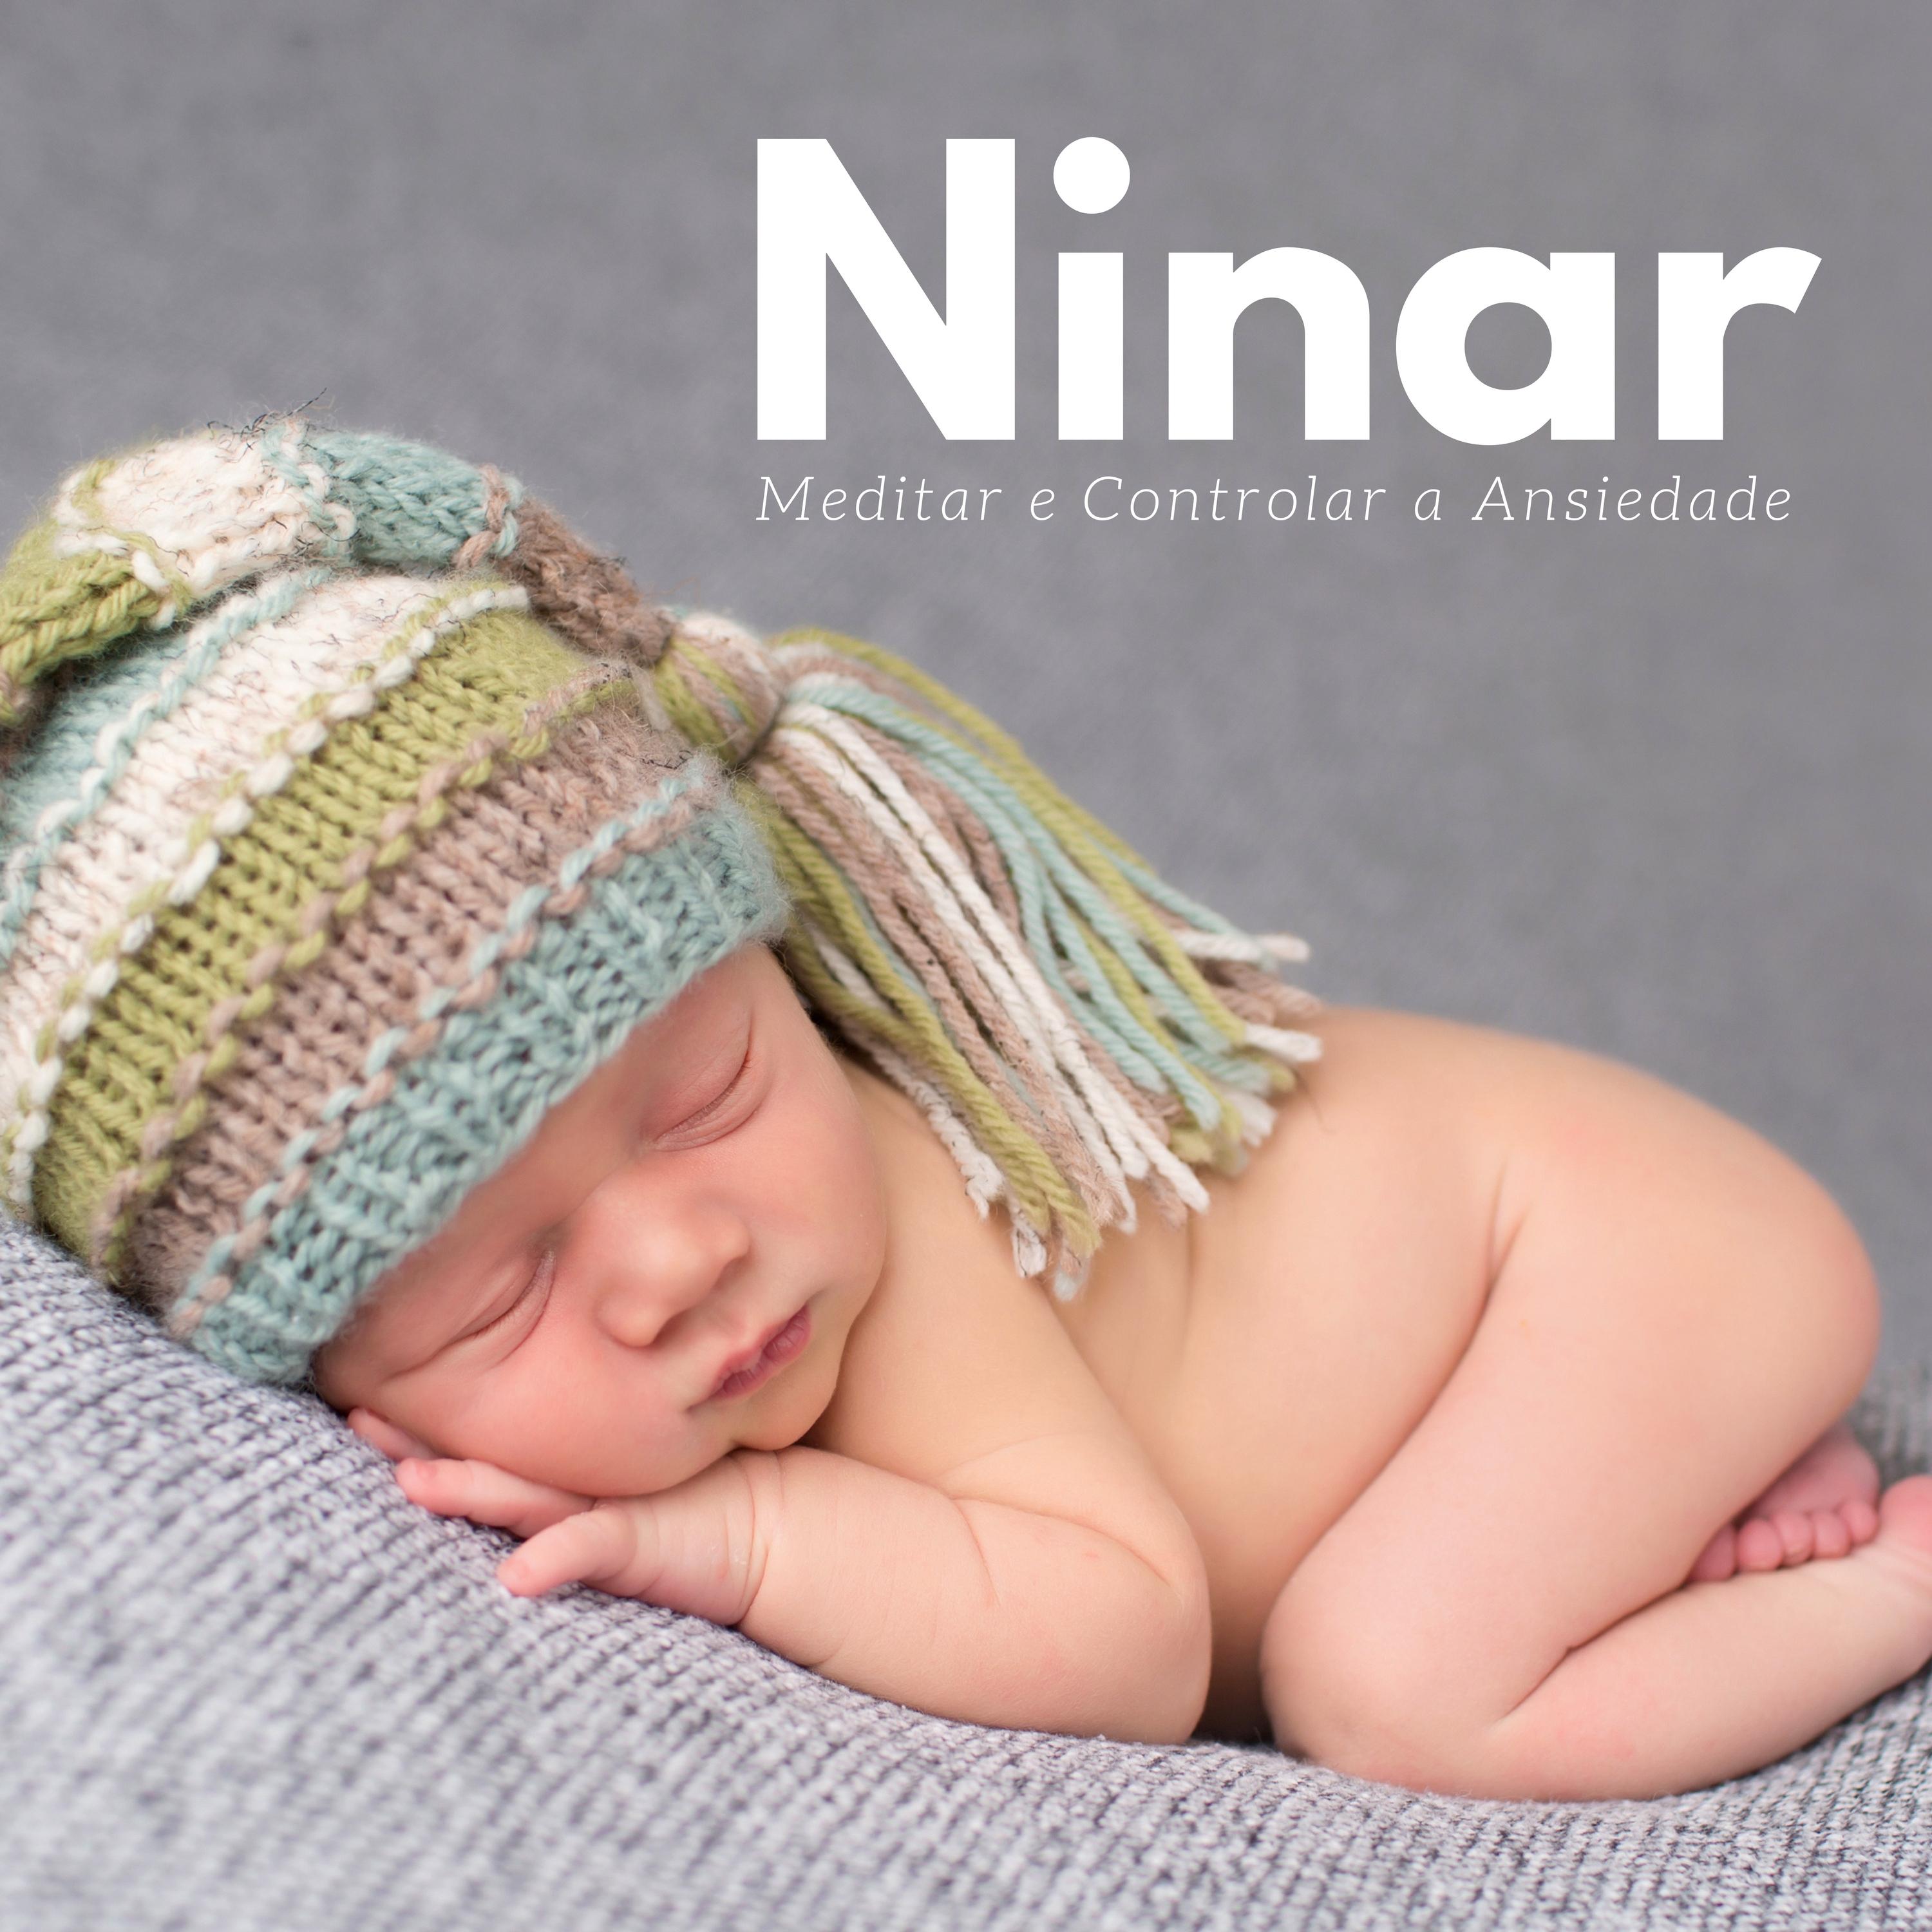 Ninar - Meditar e Controlar a Ansiedade, Música para Bebês e Adulto, Música Ambiente, Acalmar Recém-Nascido, Massagem e Relaxamento, Música Calma para Dormir